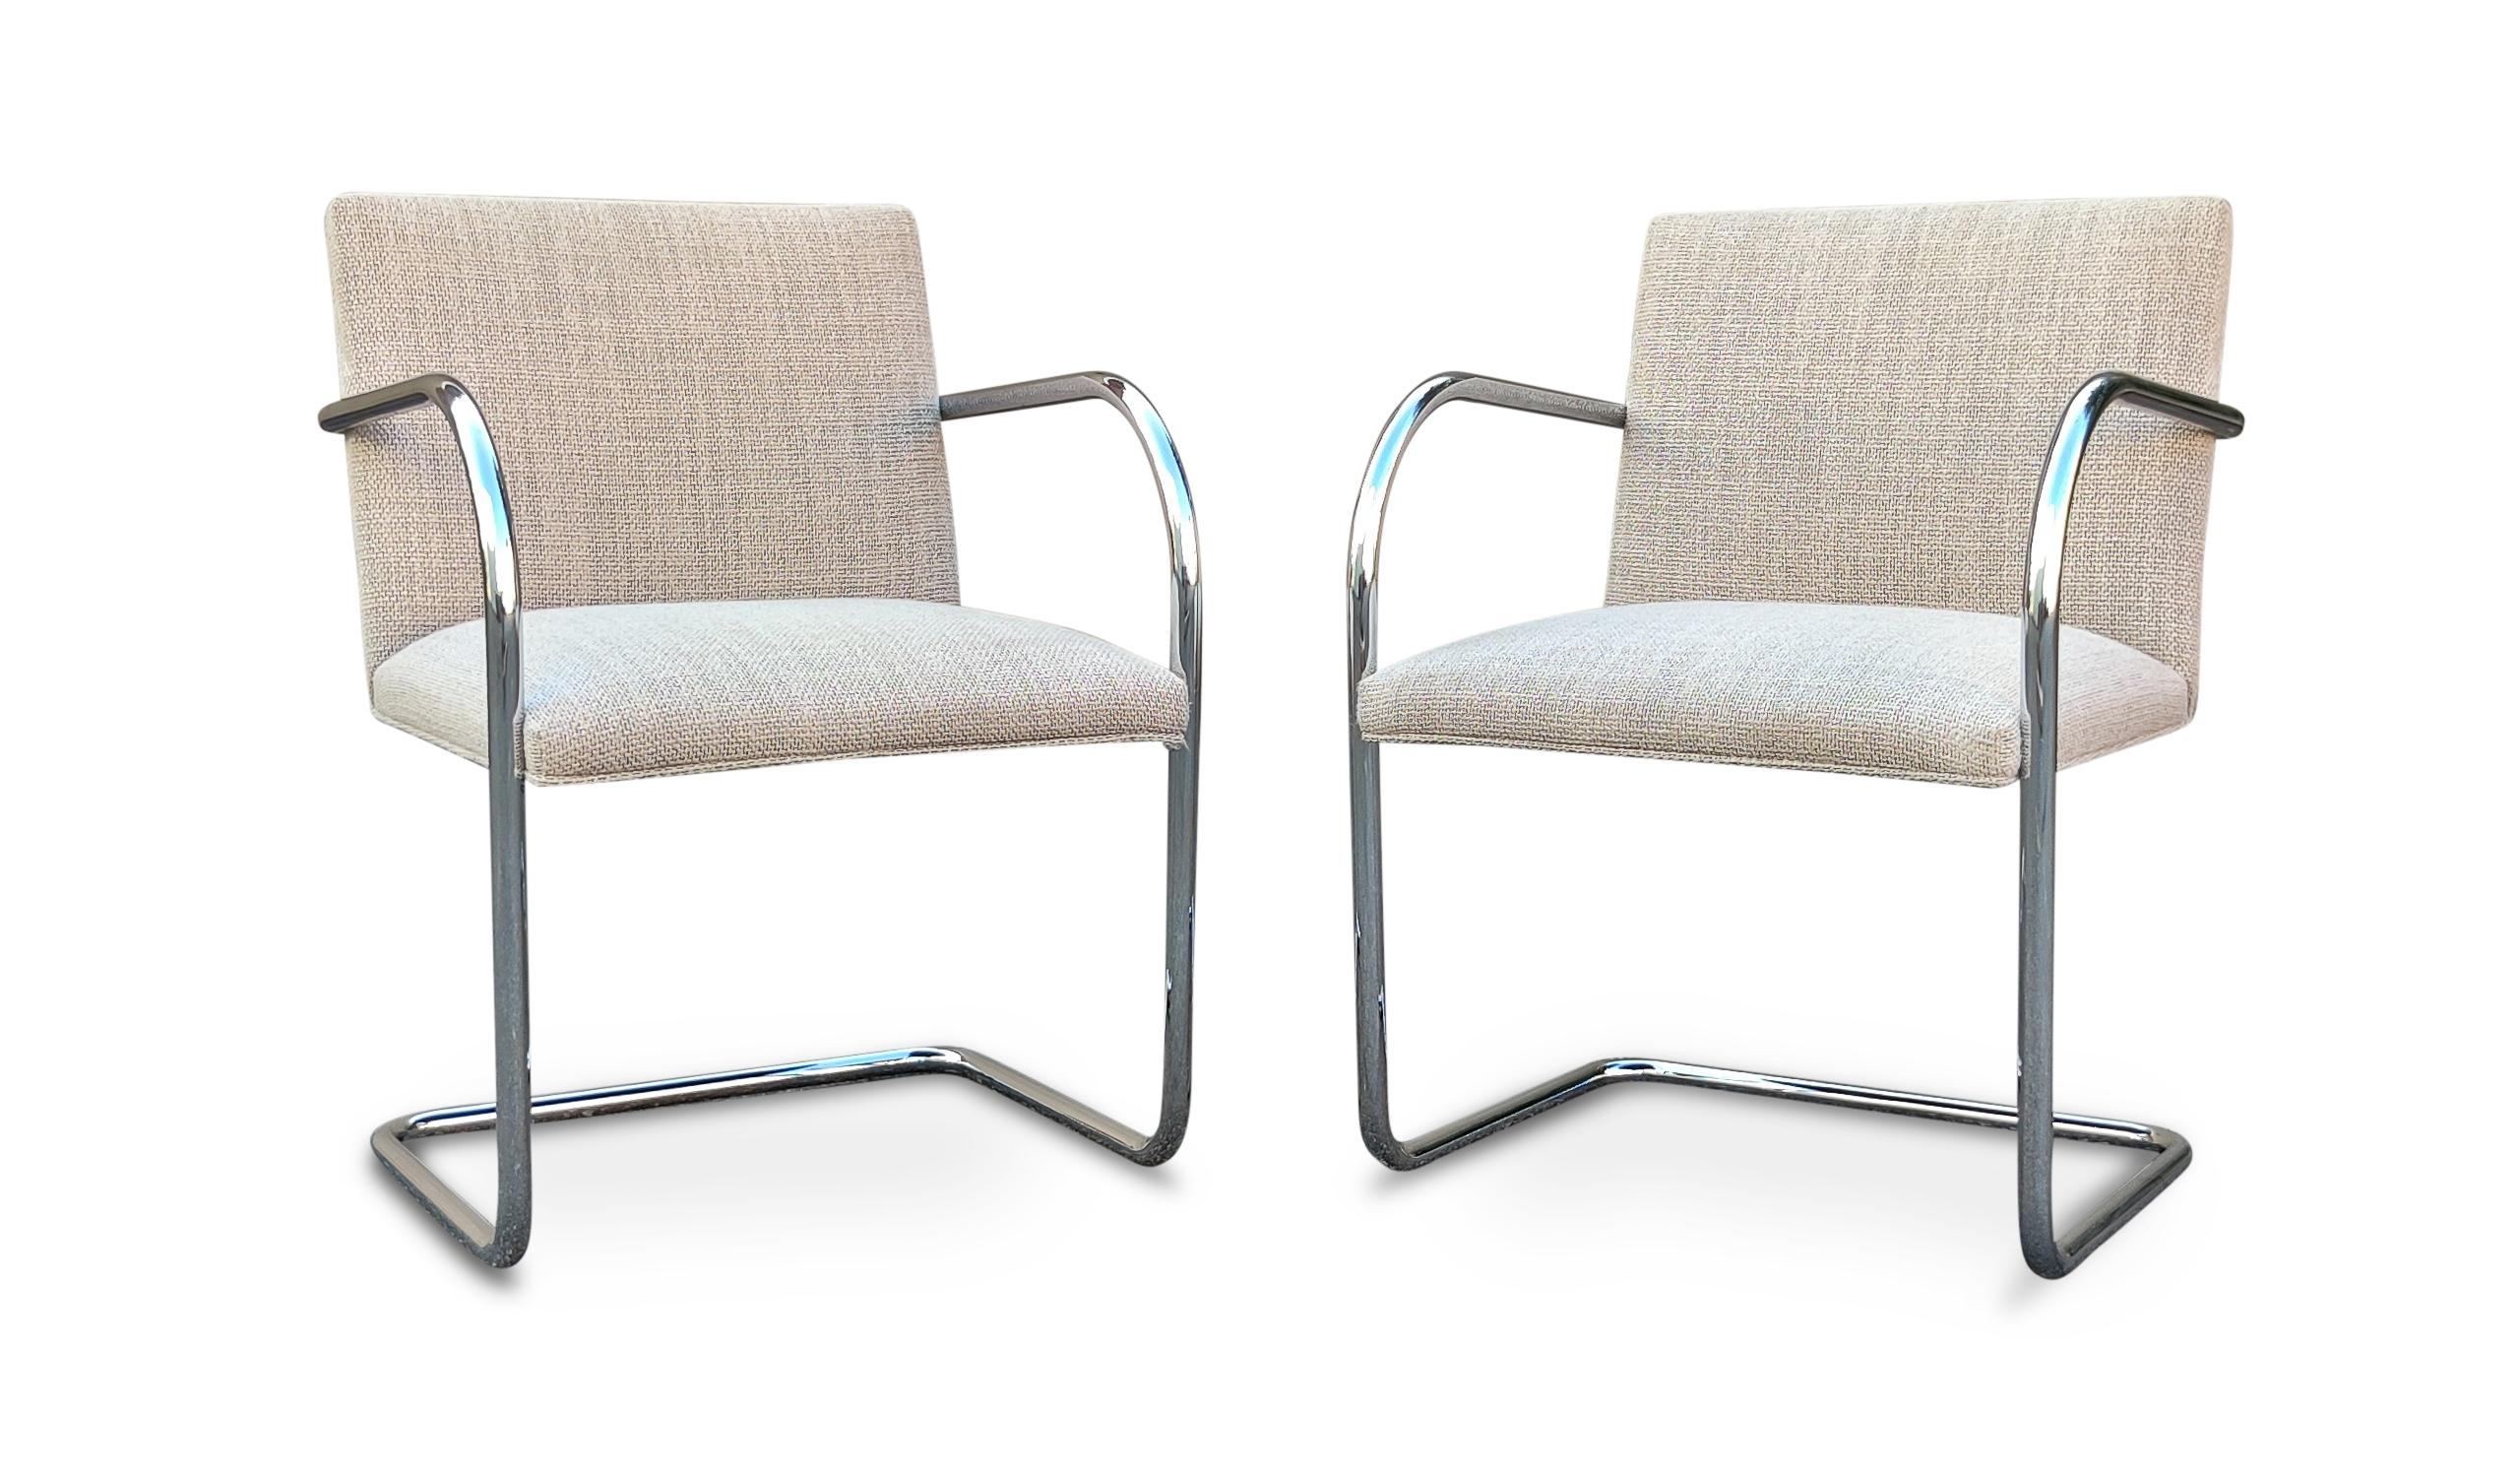 Un bel ensemble complet de 10 chaises de salle à manger à bras Brno conçues par Ludwig Mies van der Rohe et produites par Knoll. Ils sont dotés d'un cadre tubulaire chromé et d'un tissu en laine mélangée gris clair. Les chaises sont en très bon état